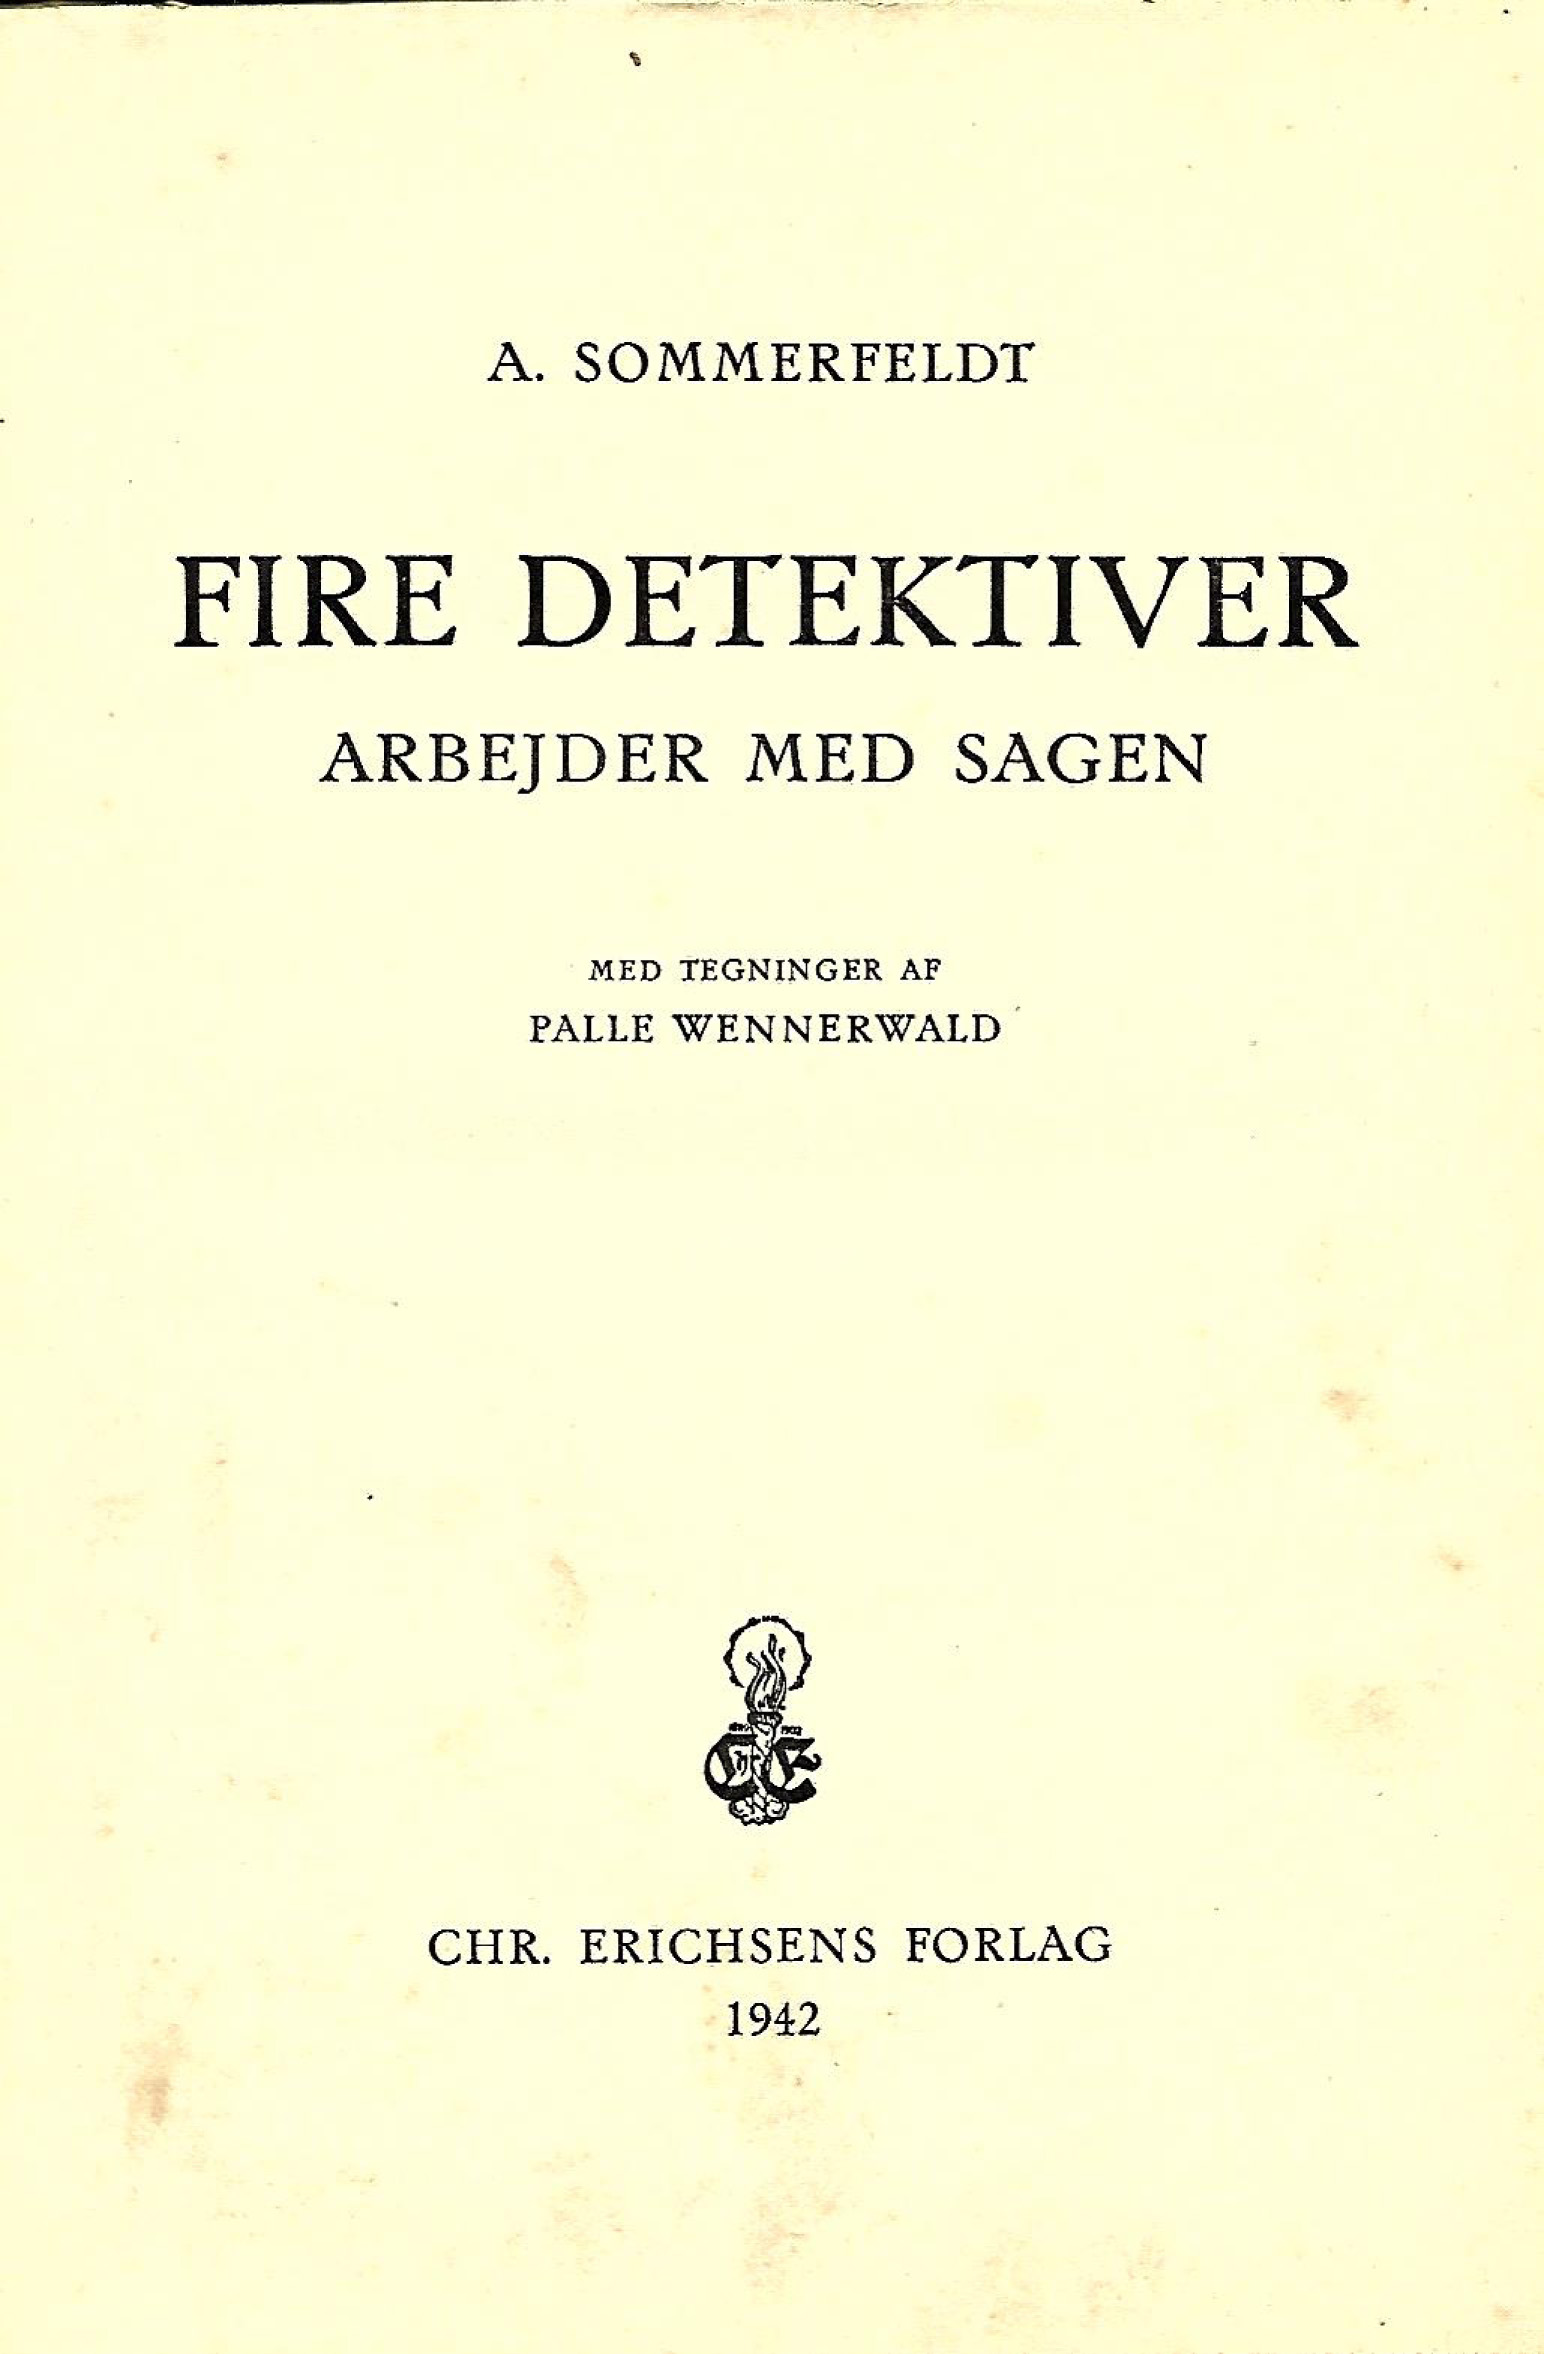 Fire detektiver arbejder med sagen - A Sommerfeldt - 1942-1